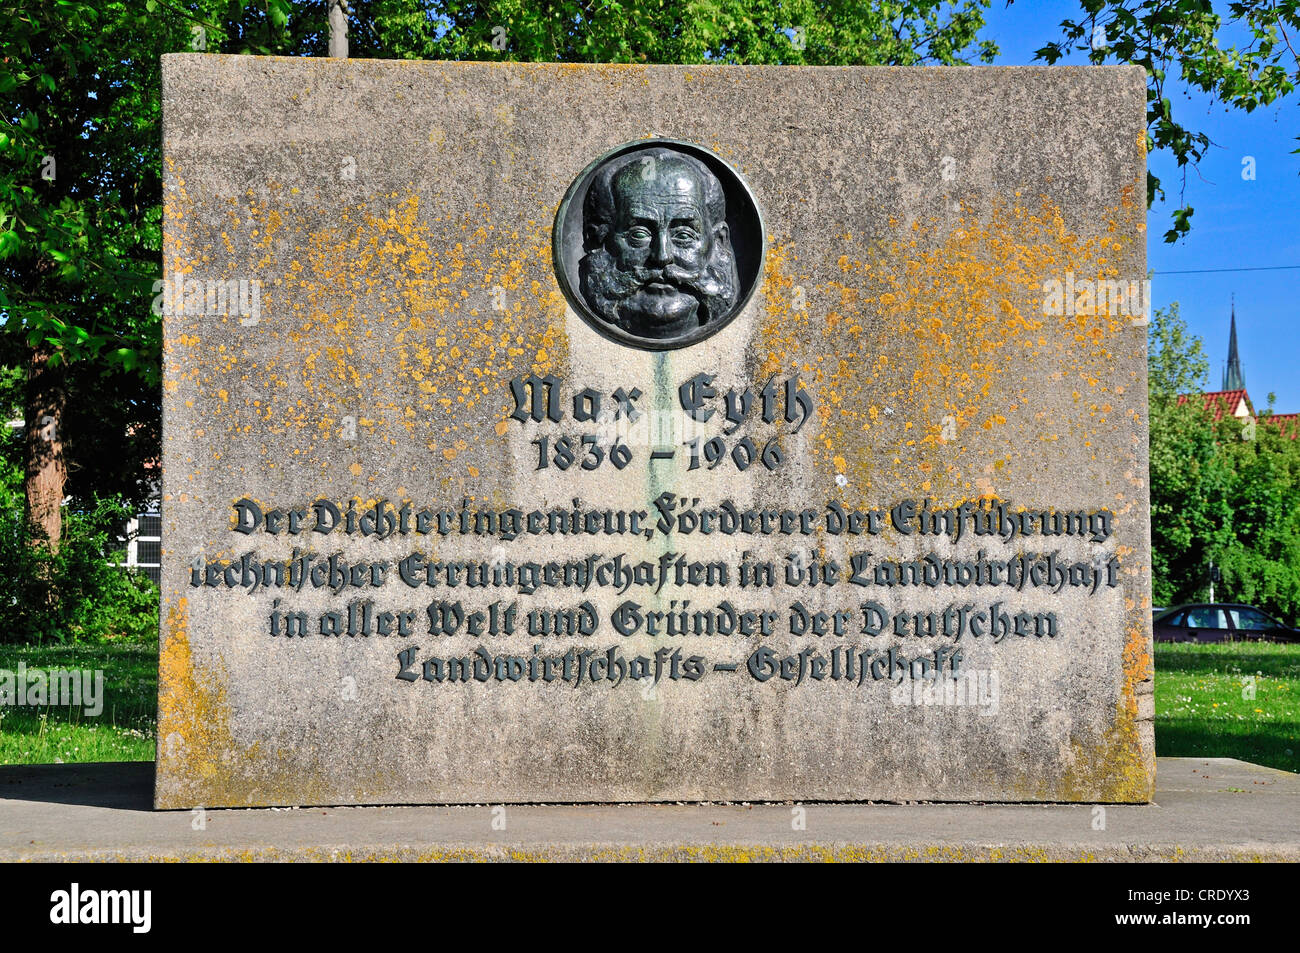 Max Eyth monument, Adlerbastei, c'est là où le 'tailleur de Ulm' a commencé ses essais en vol, Ulm, Bade-Wurtemberg Banque D'Images